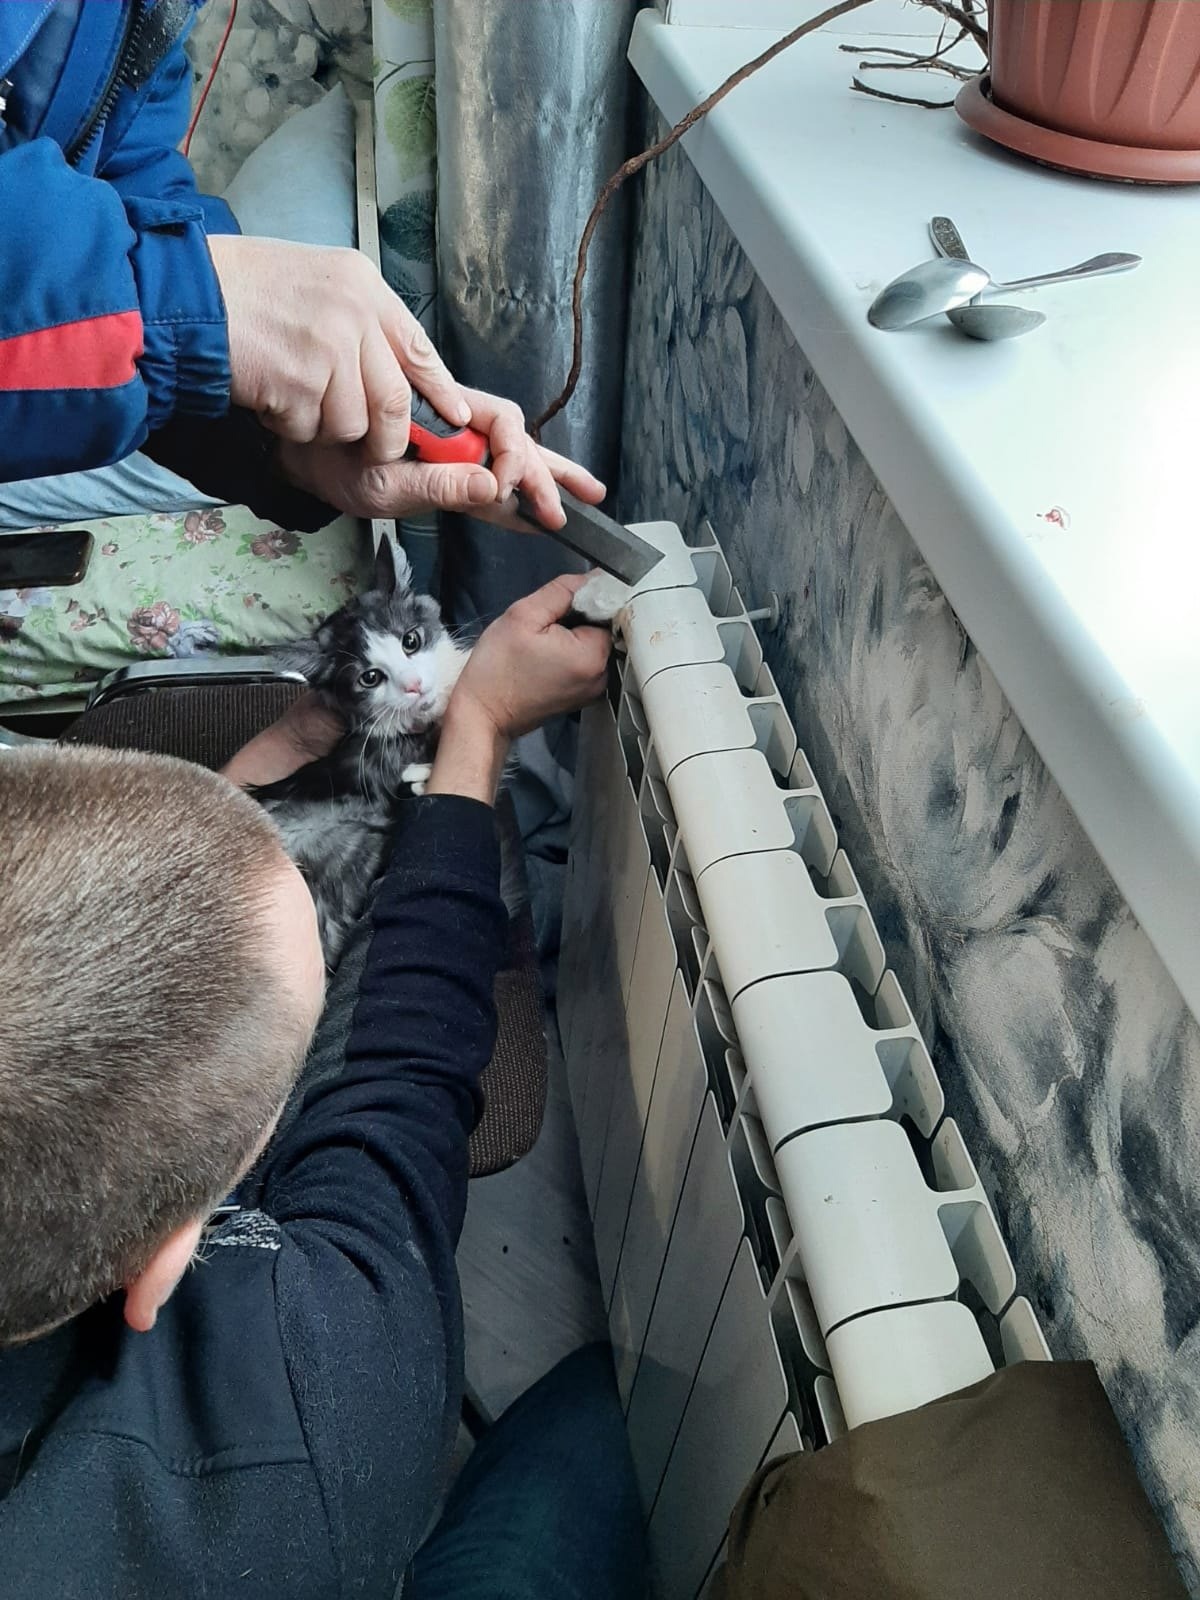 В Смоленске спасатели вытащили из батареи застрявшую кошку